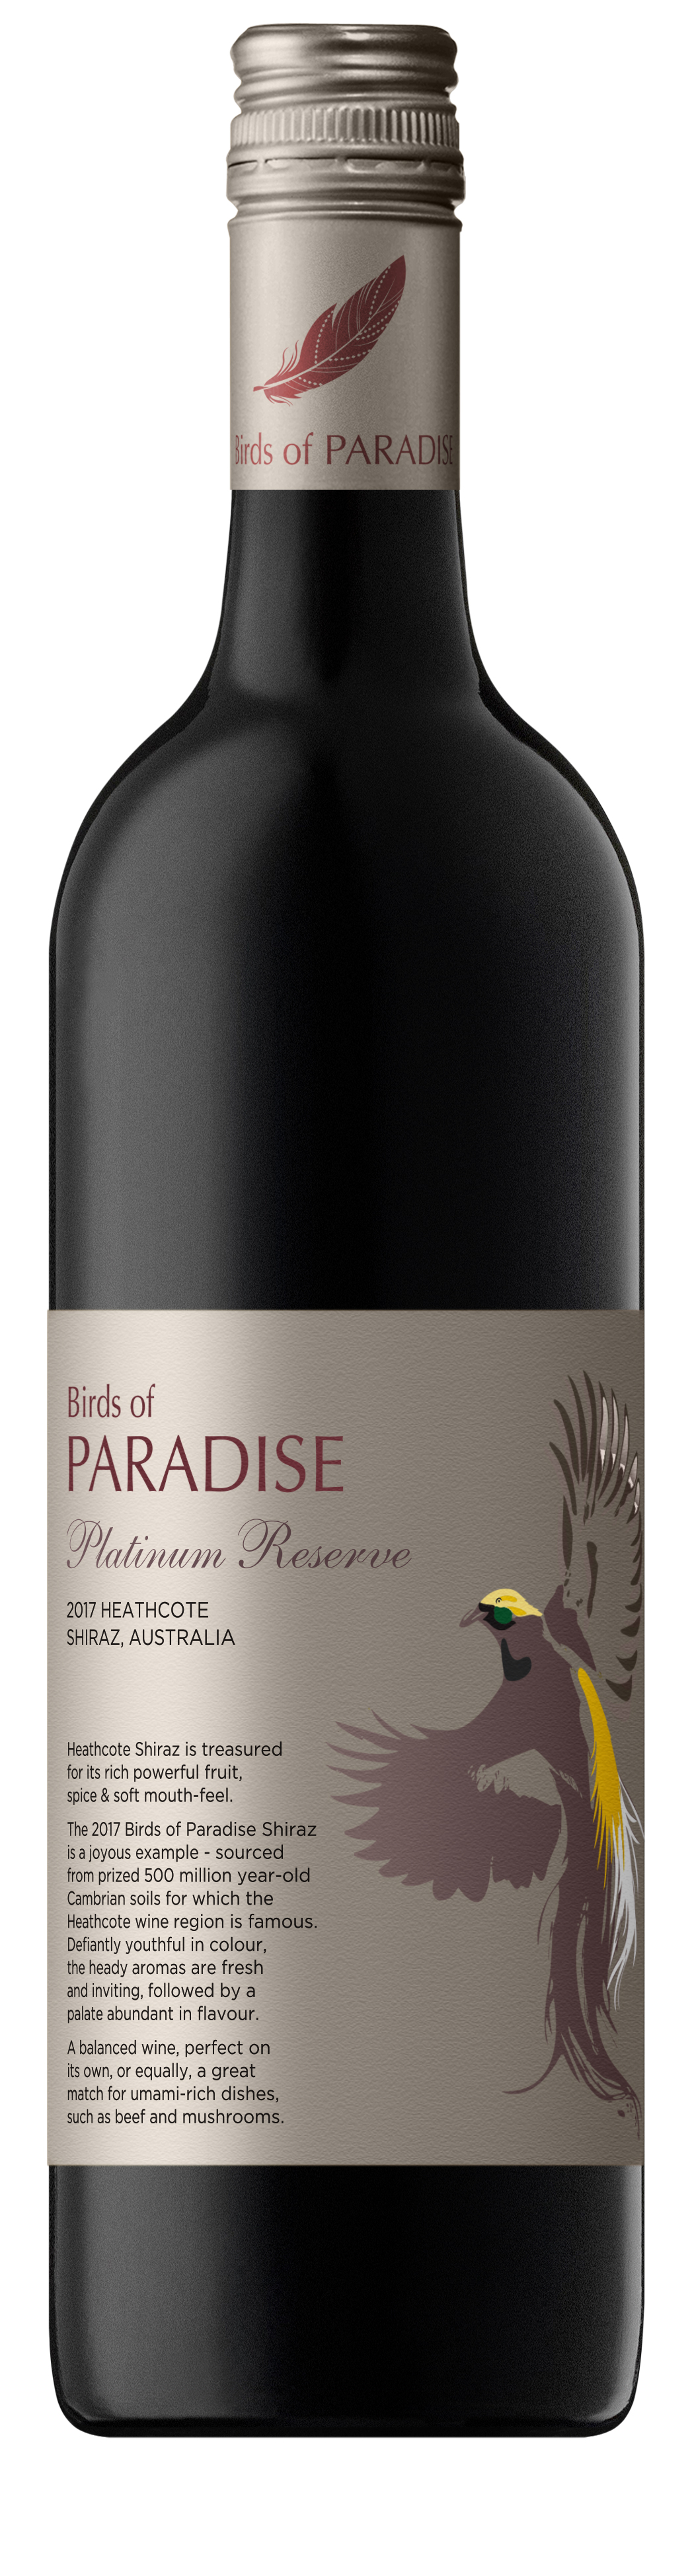 Birds of Paradise Heathcote Shiraz 2017